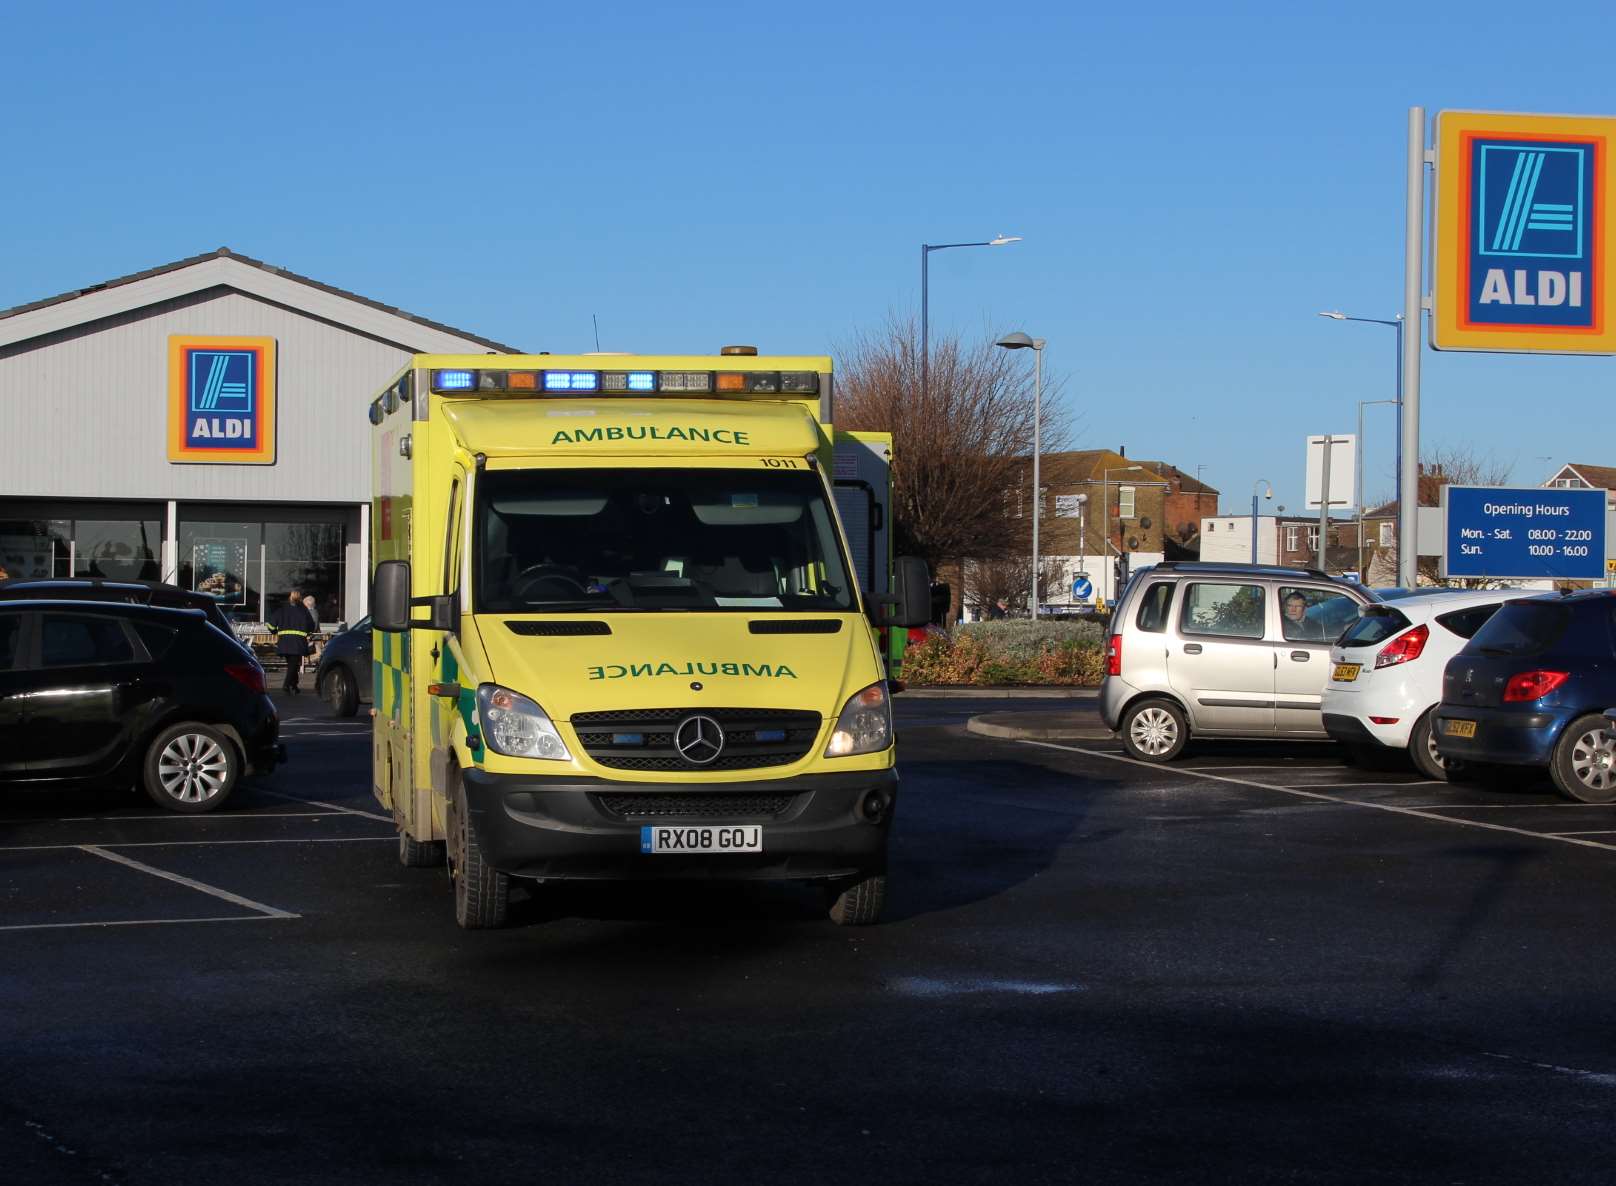 An ambulance at Aldi's car park